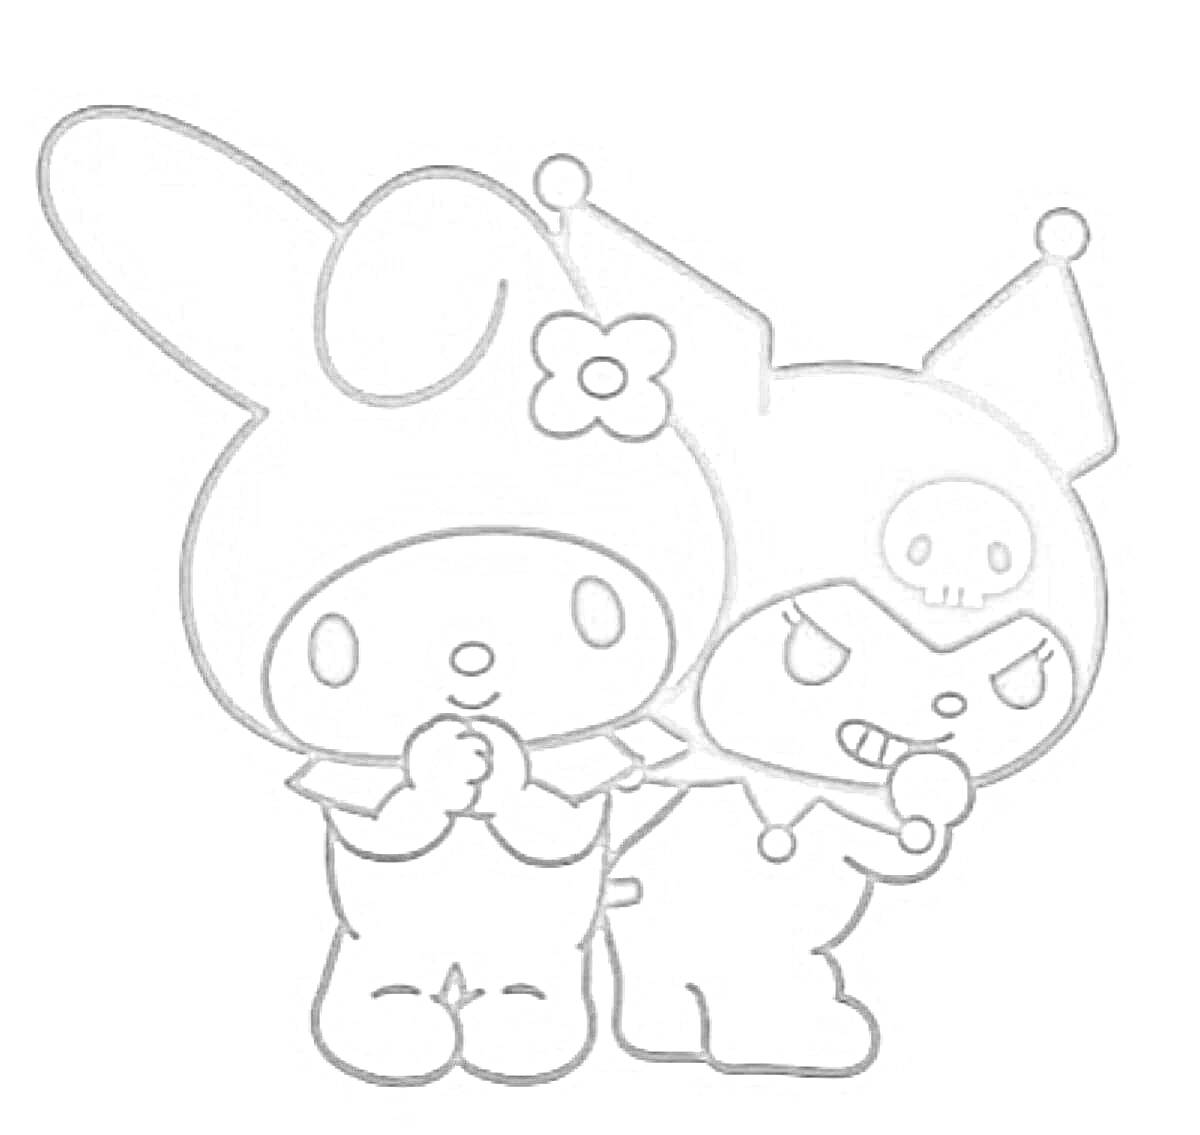 Раскраска Два персонажа Санрио - один с ушами кролика и цветком на капюшоне, второй в капюшоне с изображением черепа